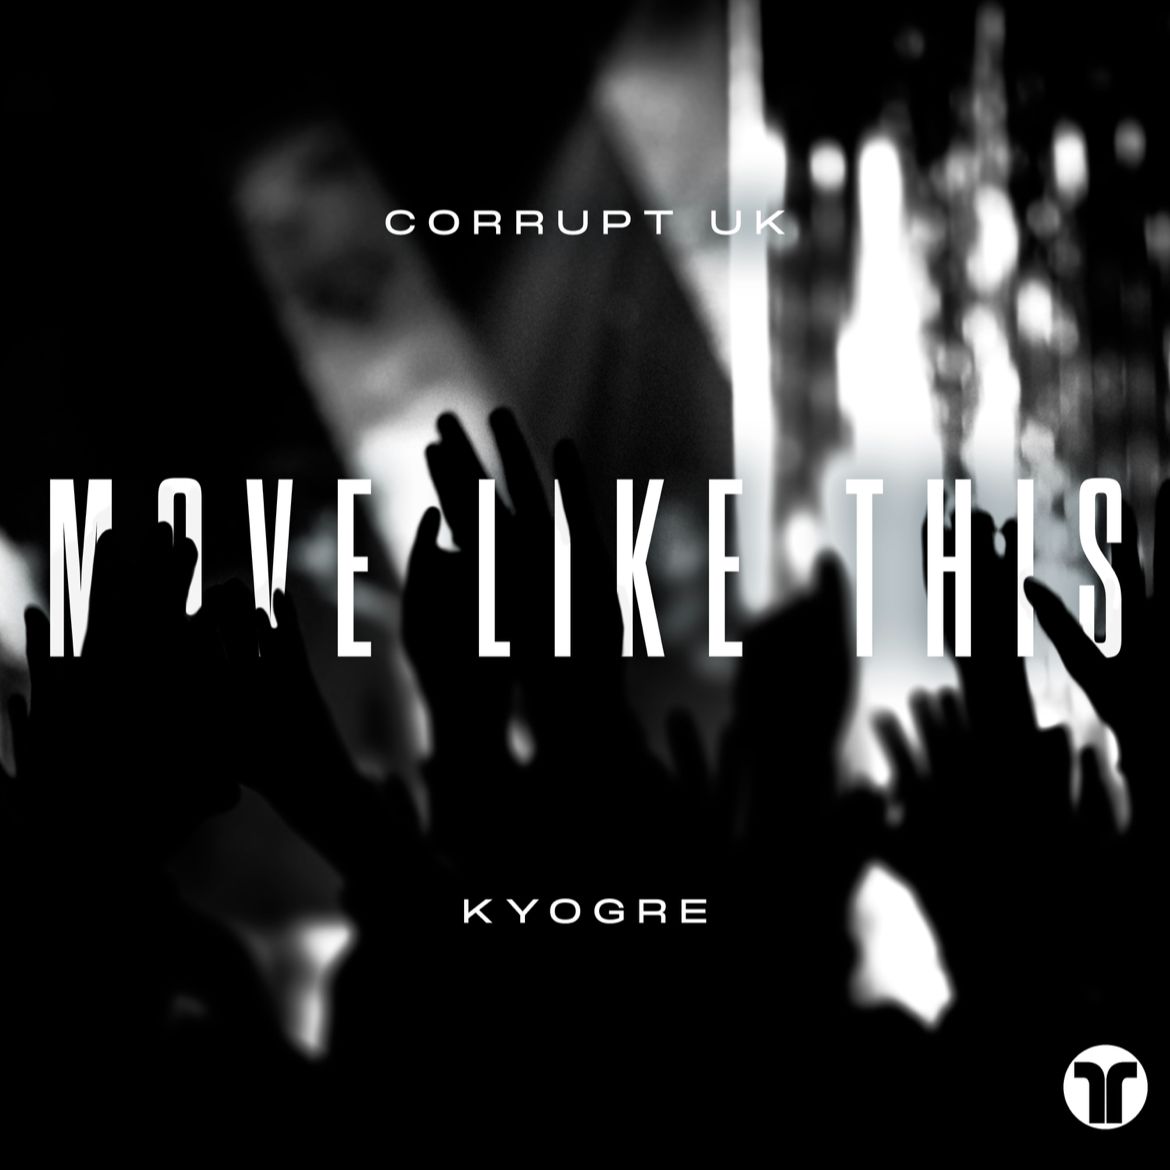 Ṣe igbasilẹ Corrupt (UK) & Kyogre - Move Like This